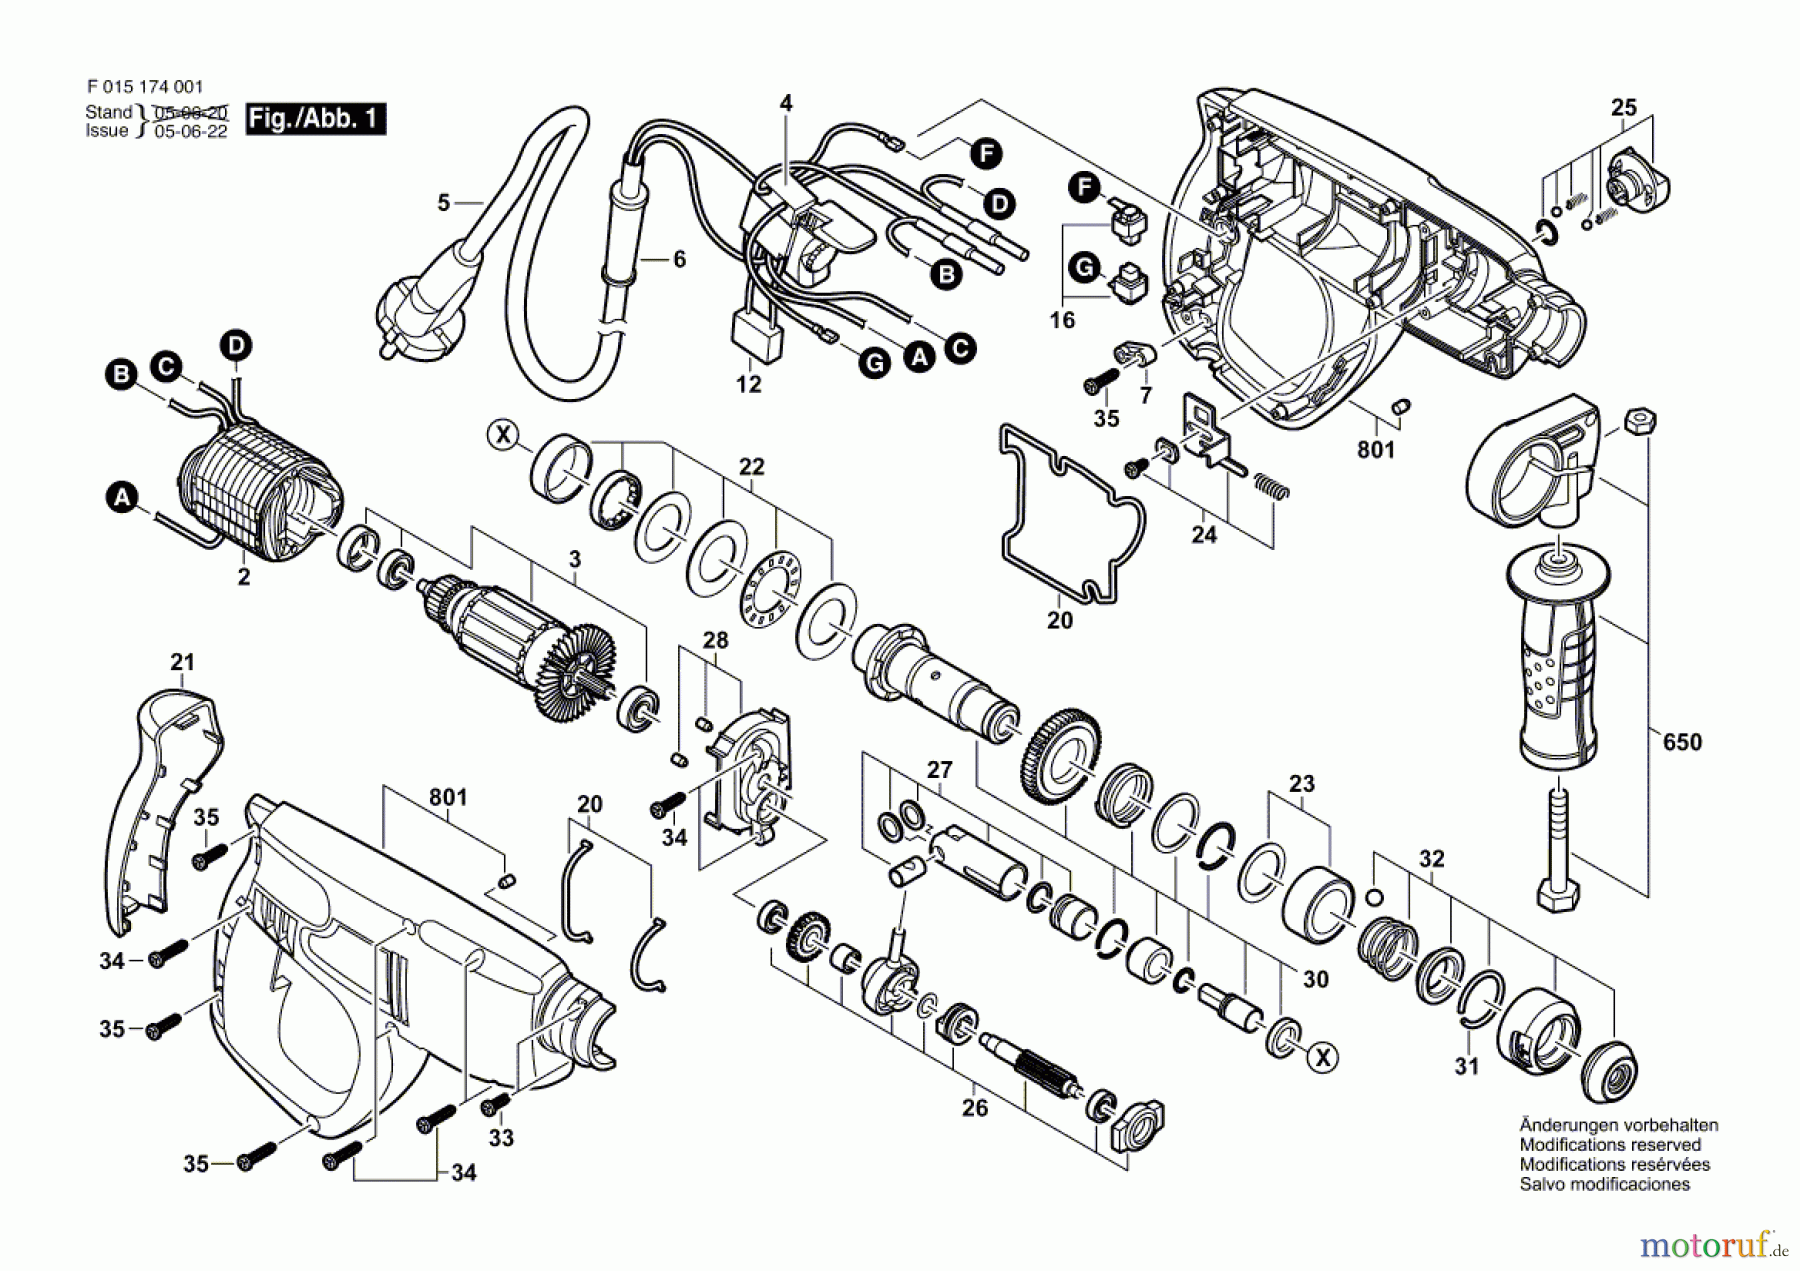  Bosch Werkzeug Bohrhammer 1735 Seite 1